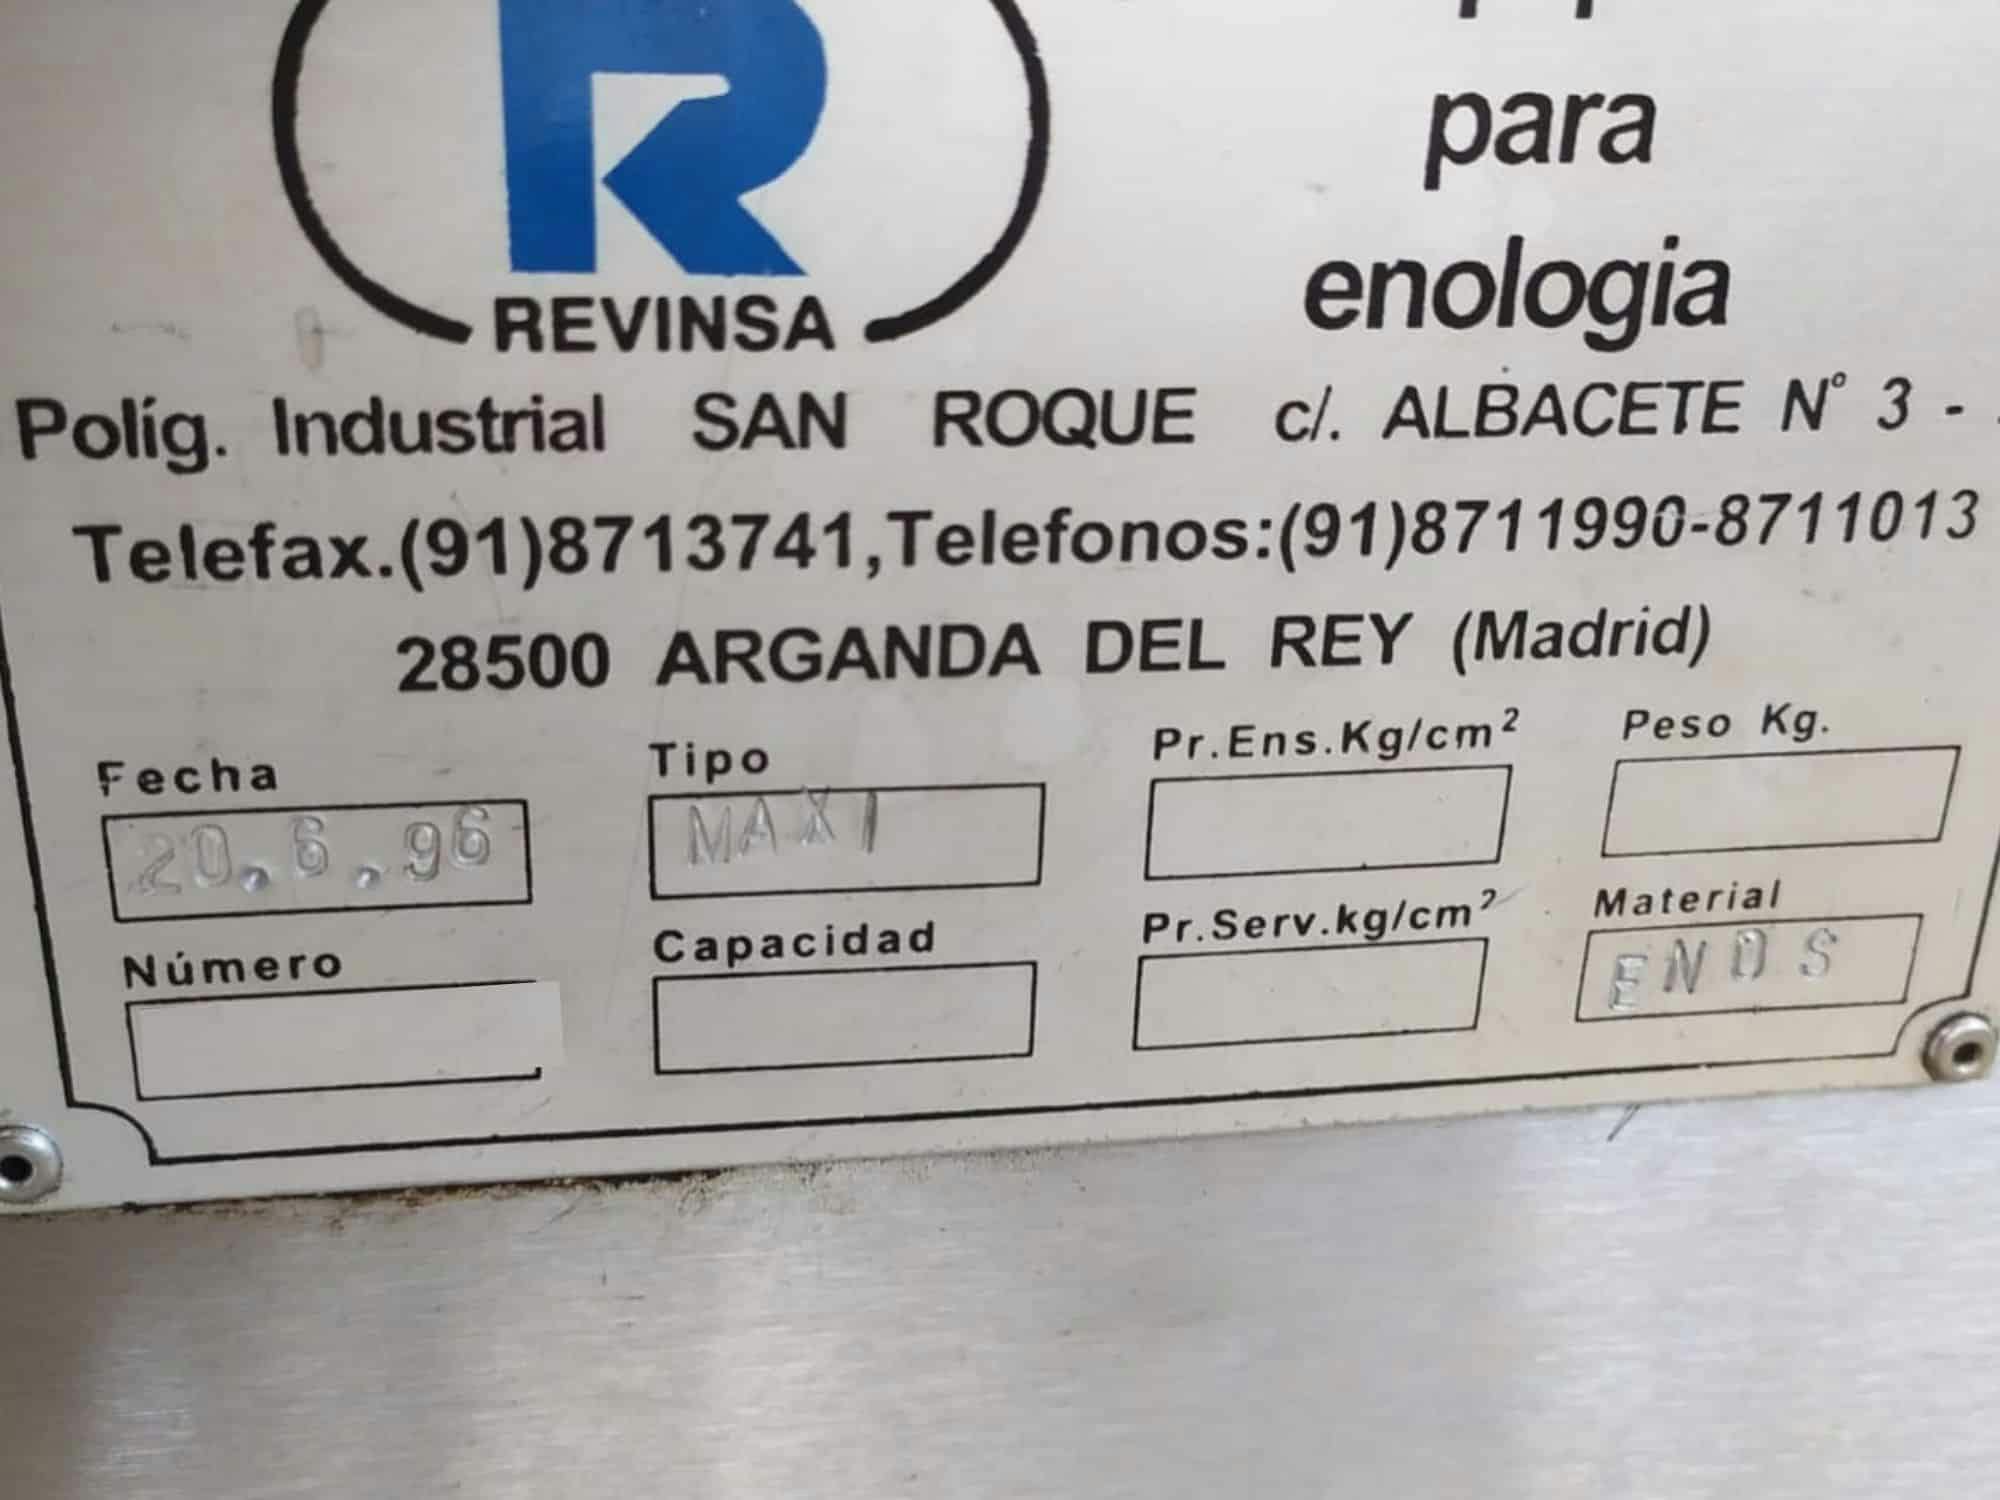 Výrobní štítek plnicí linky Revinsa pro nevratné skleněné lahve